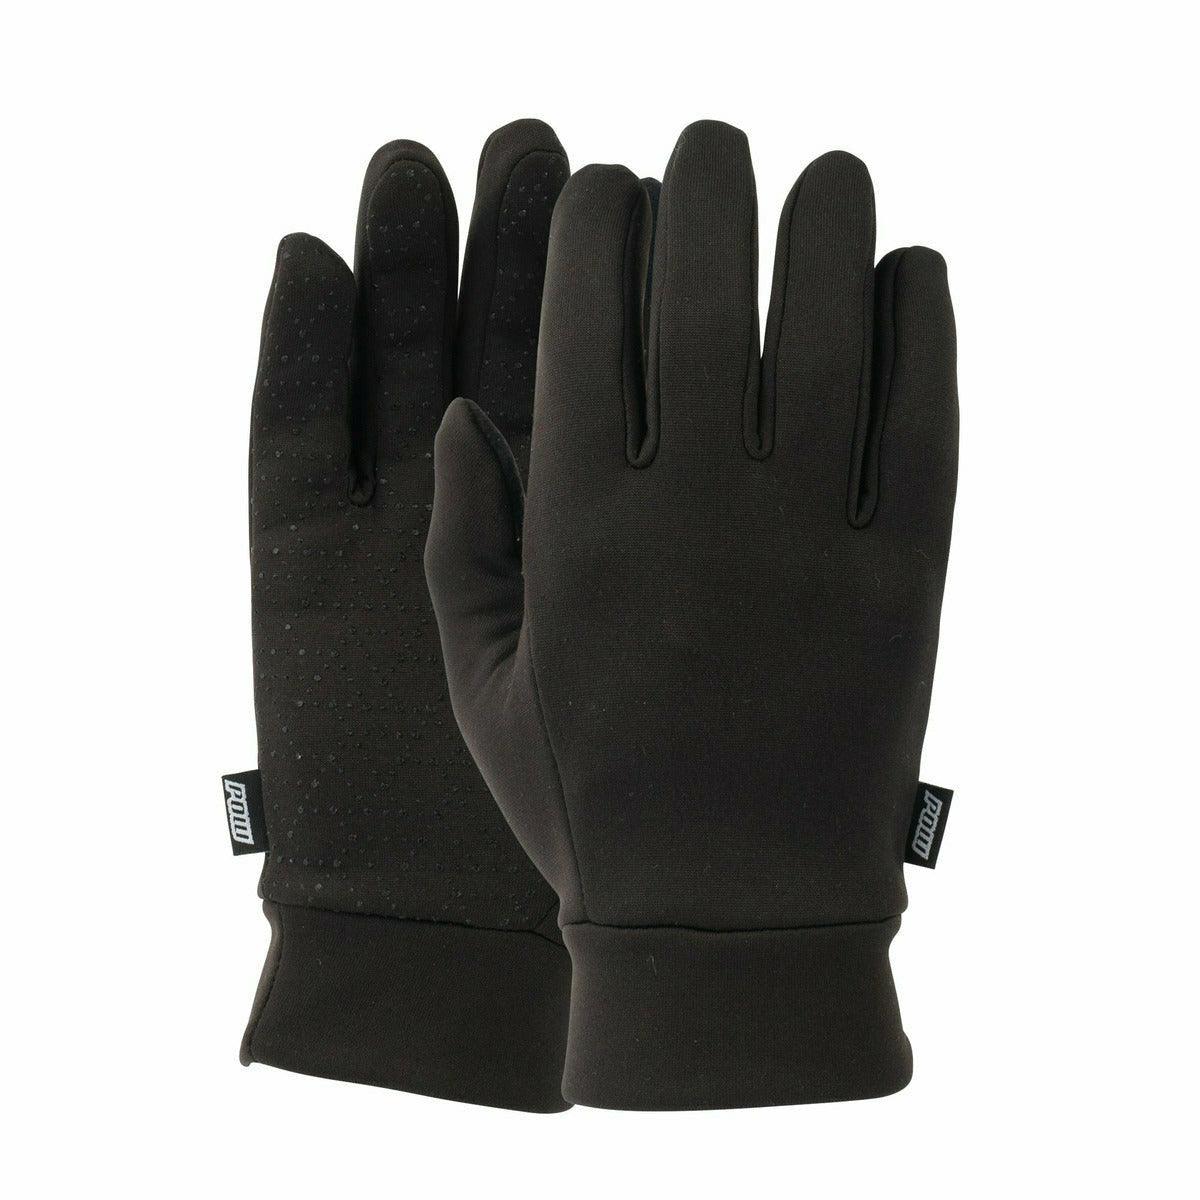 POW Handschuhe Microfleece Liner Herren im Outlet Sale